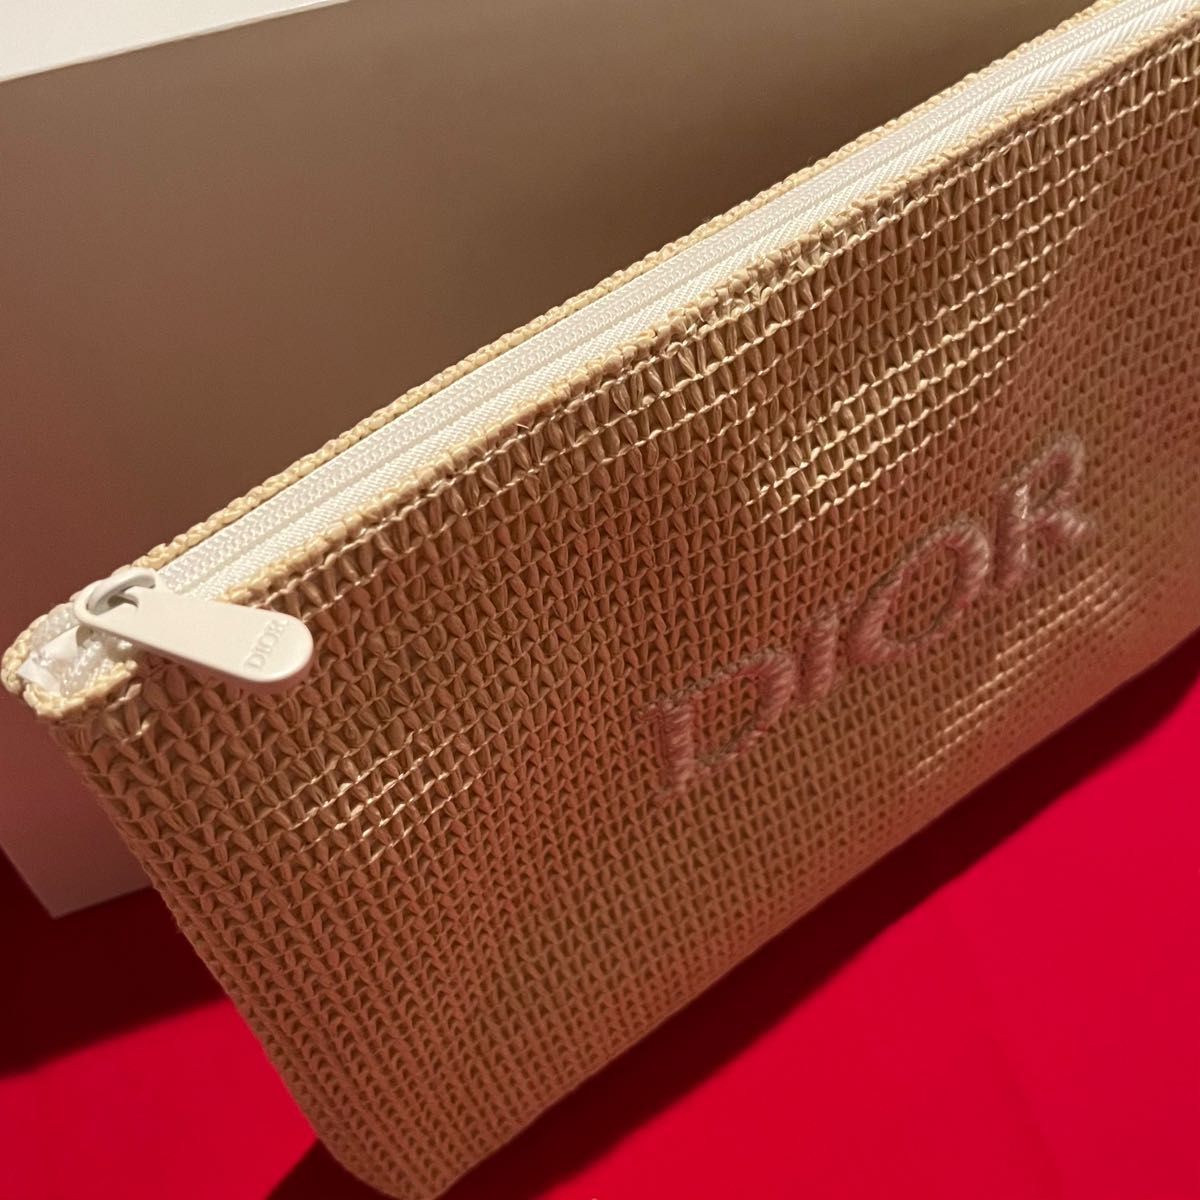 ディオール Dior ビューティオリジナルポーチ 母の日 限定品 ノベルティ 非売品 クラッチバッグ 人気ポーチ コスメポーチ